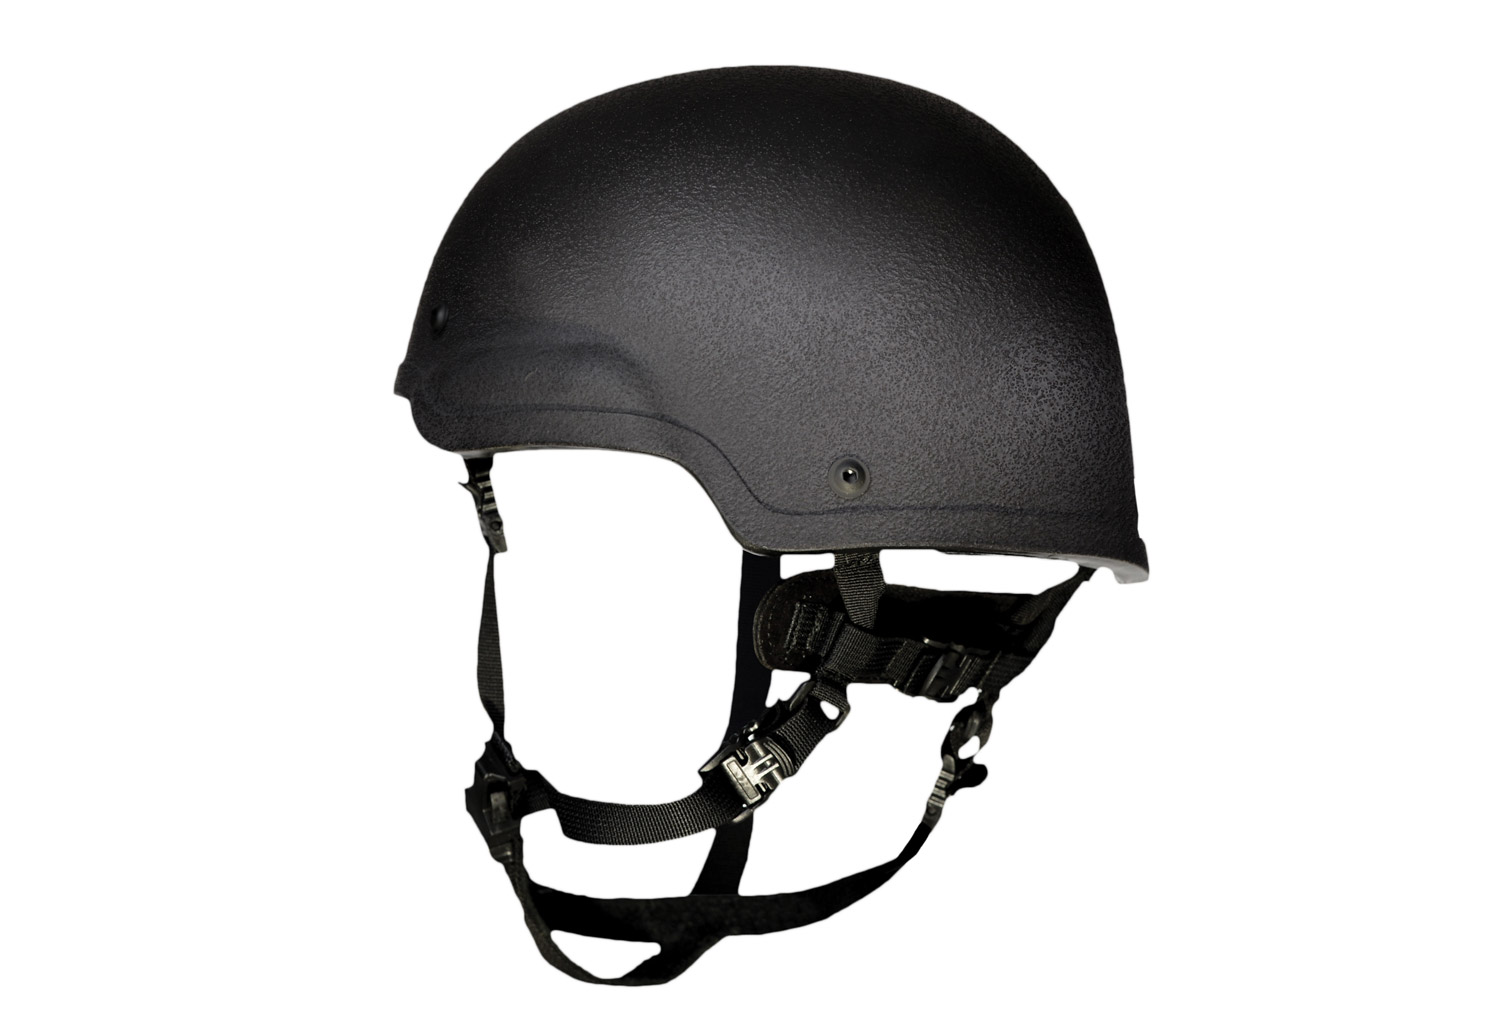 helmet-mid-cut-side